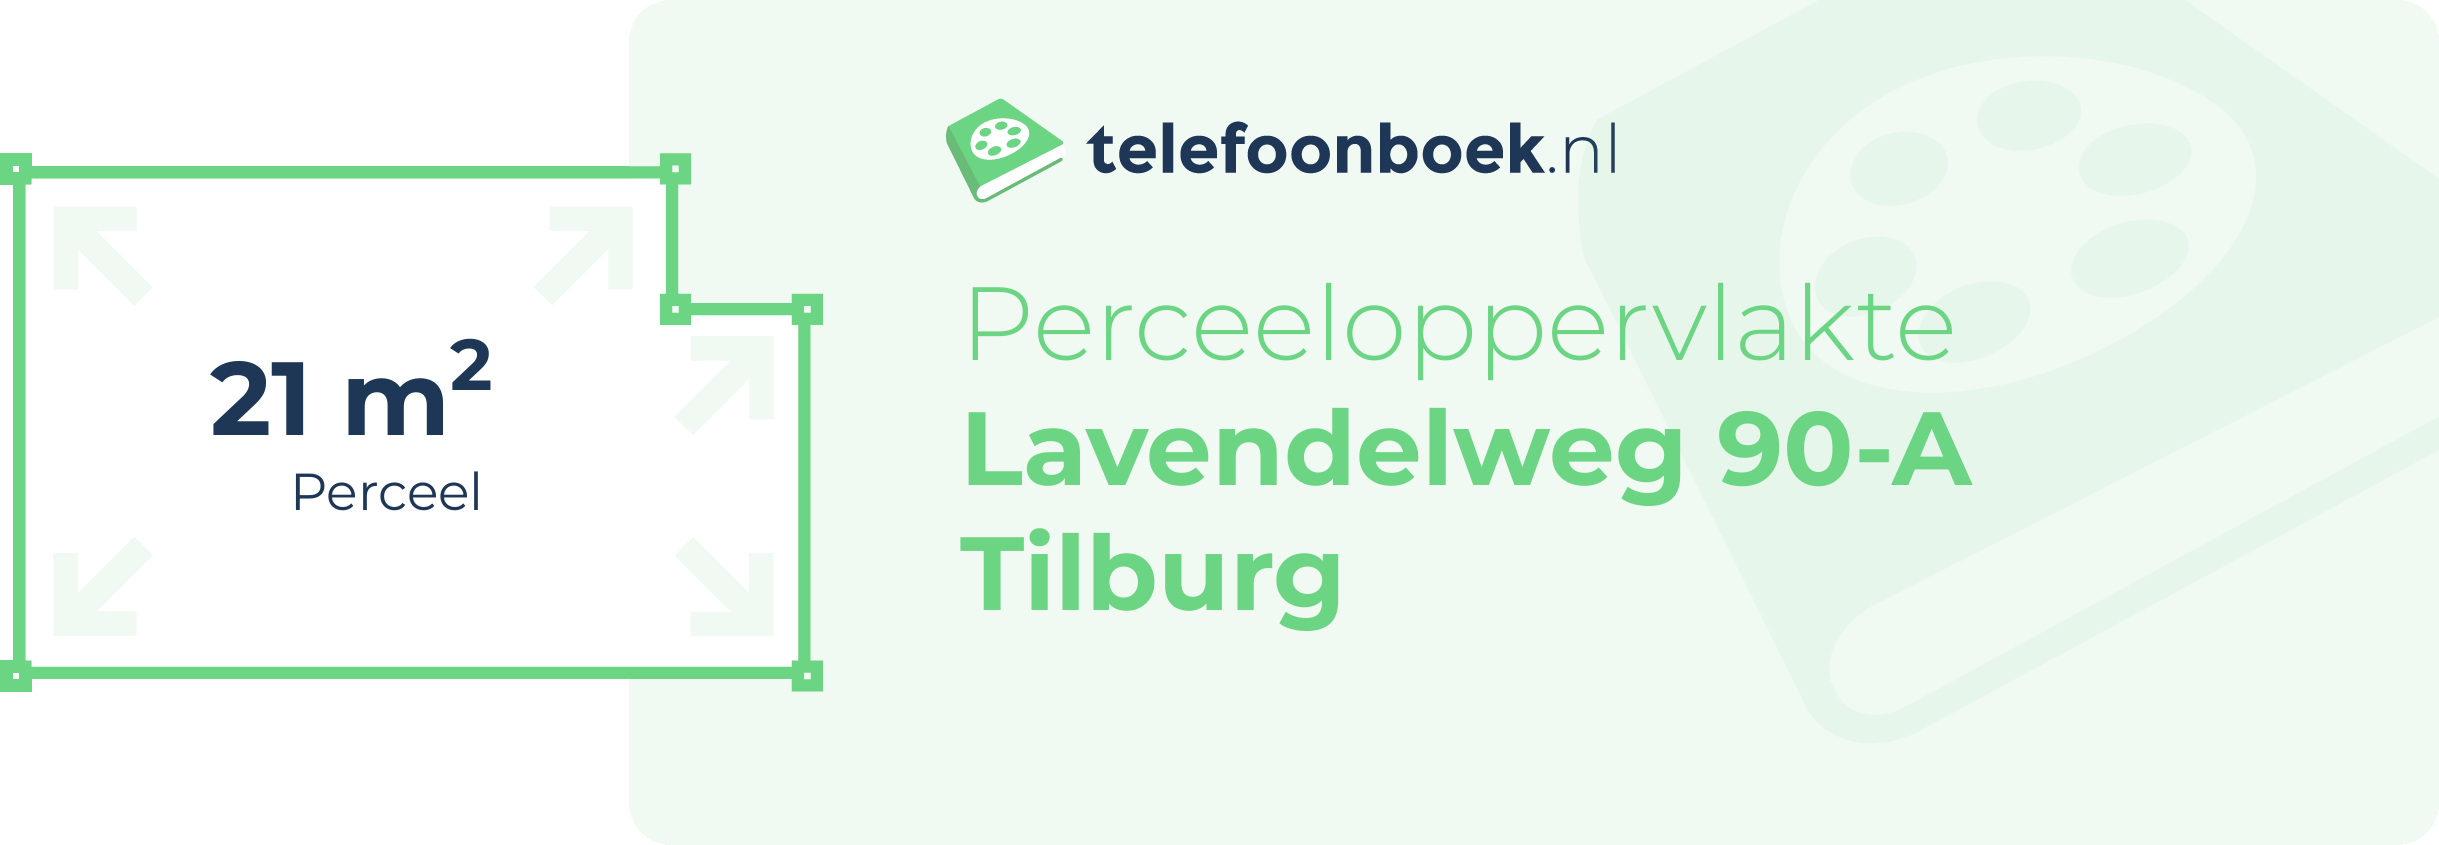 Perceeloppervlakte Lavendelweg 90-A Tilburg